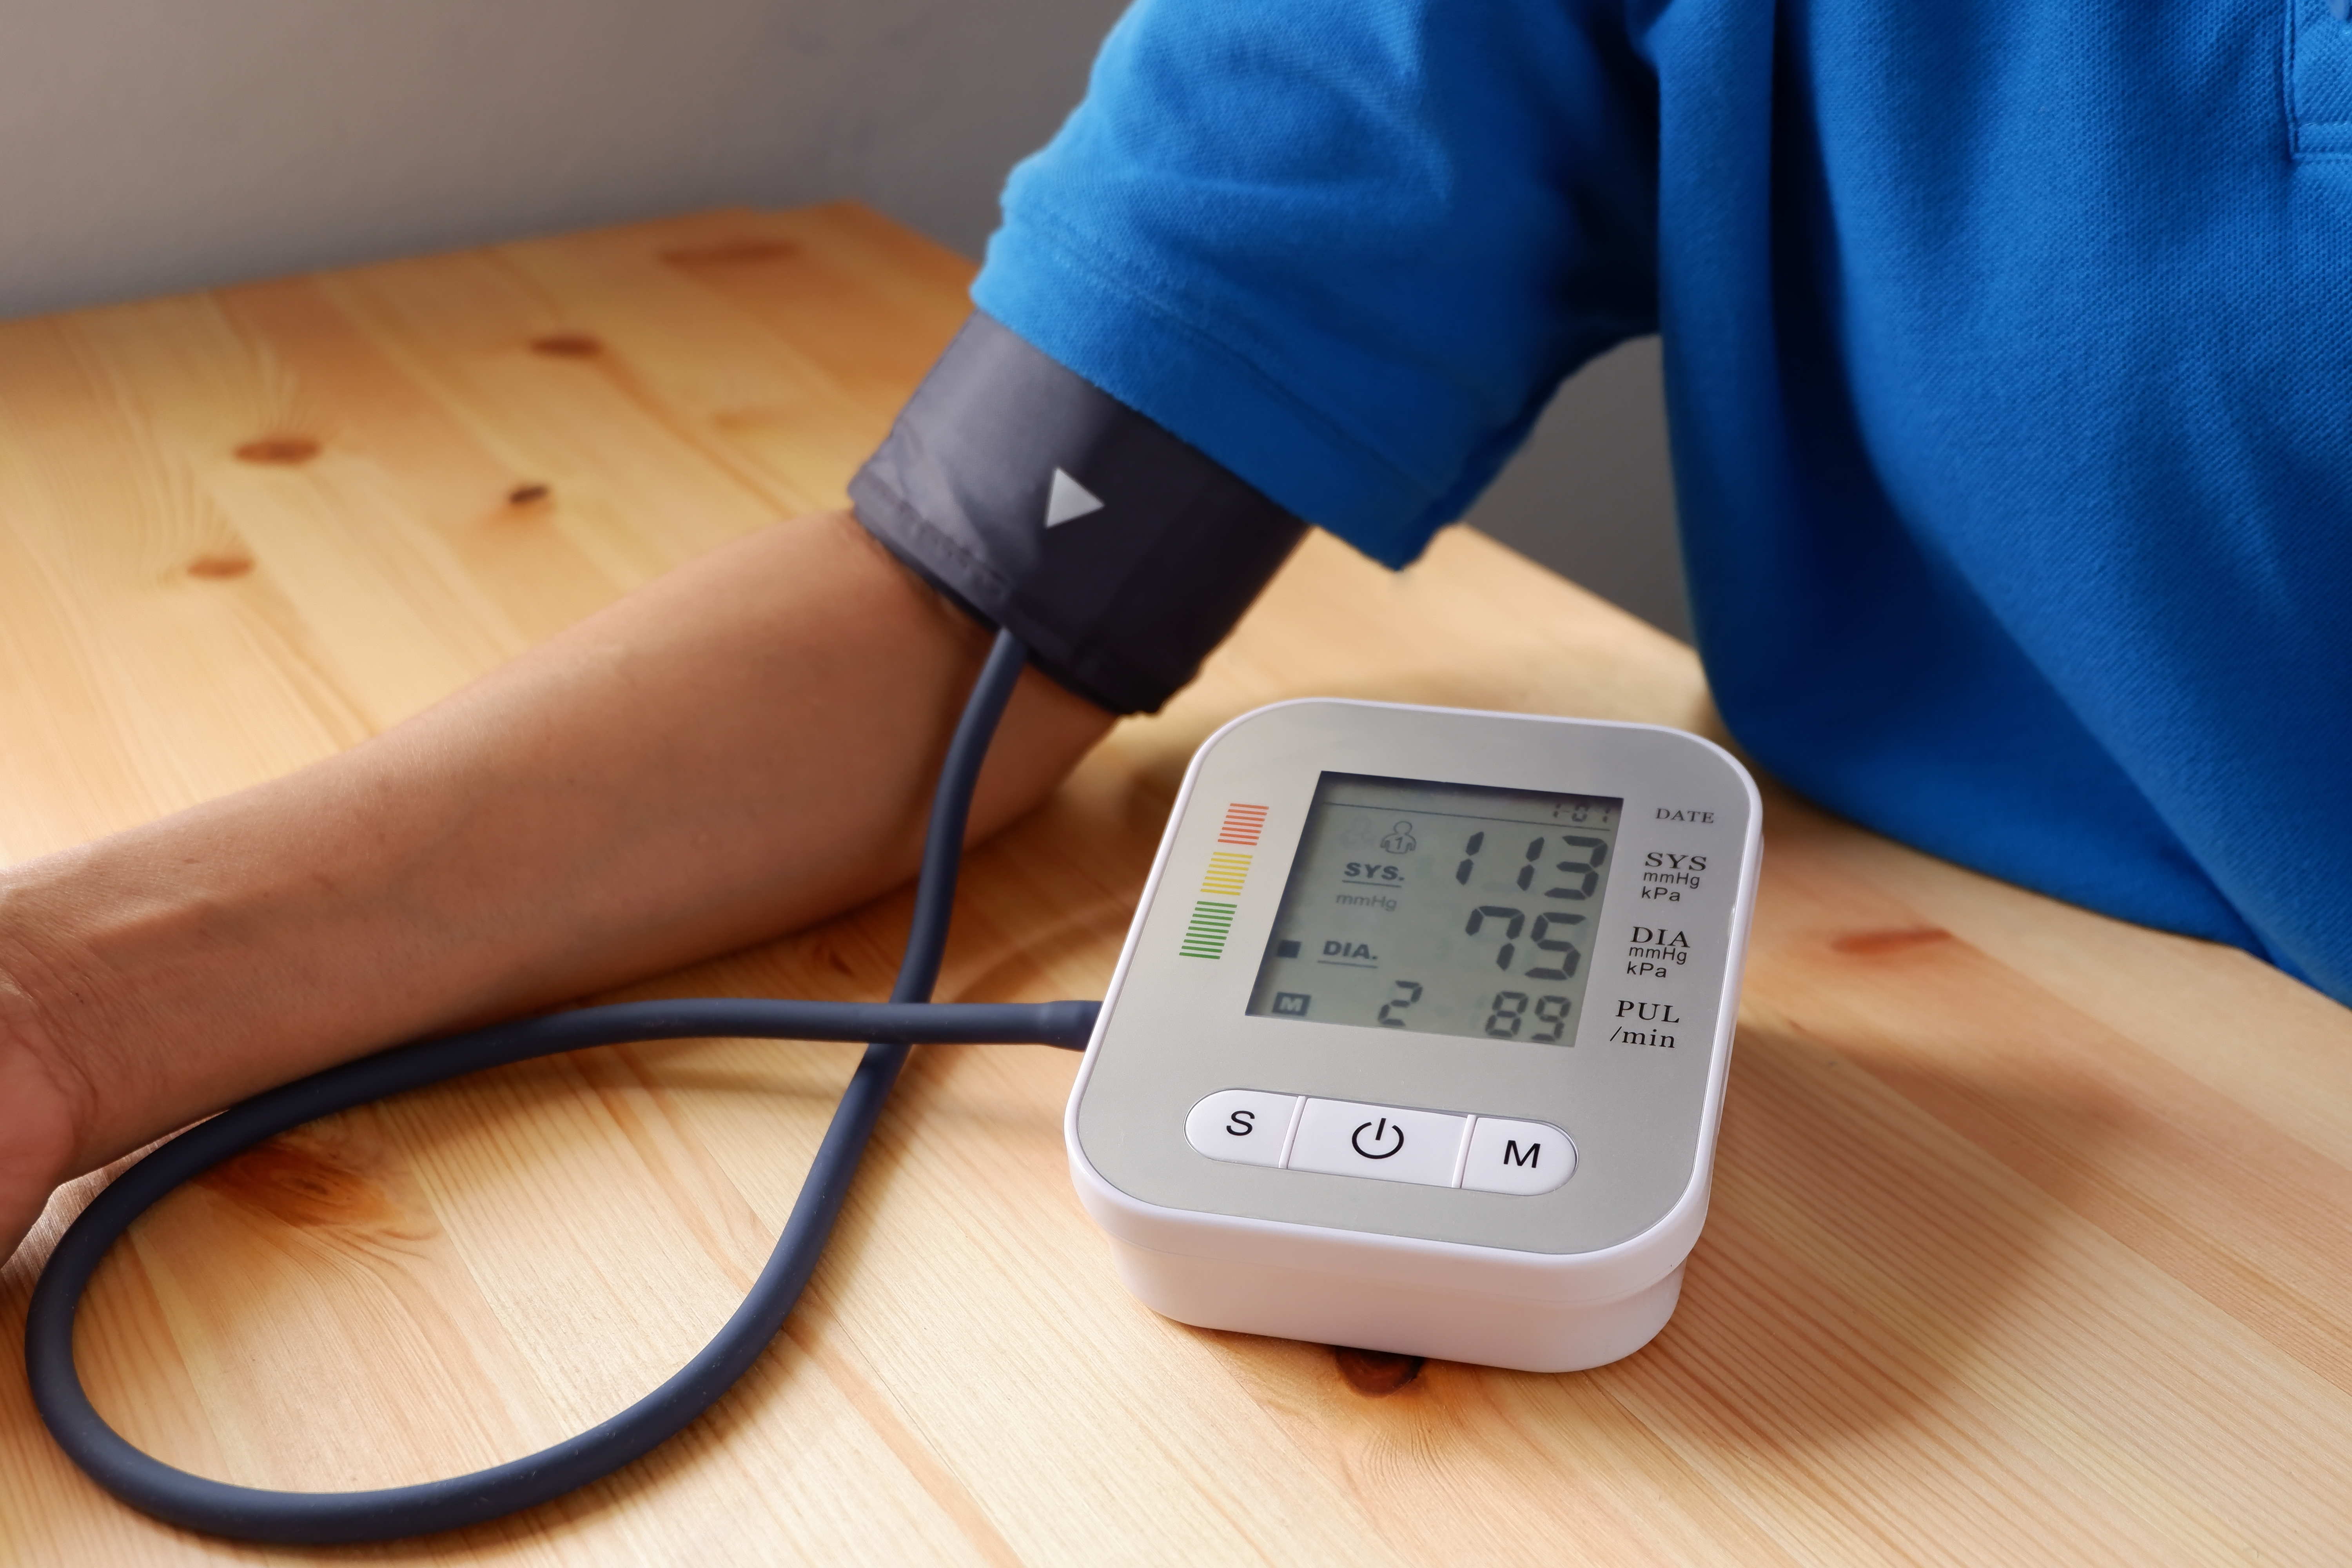 rossz idő a magas vérnyomás miatt magas vérnyomás esetén a nyomás csökkent